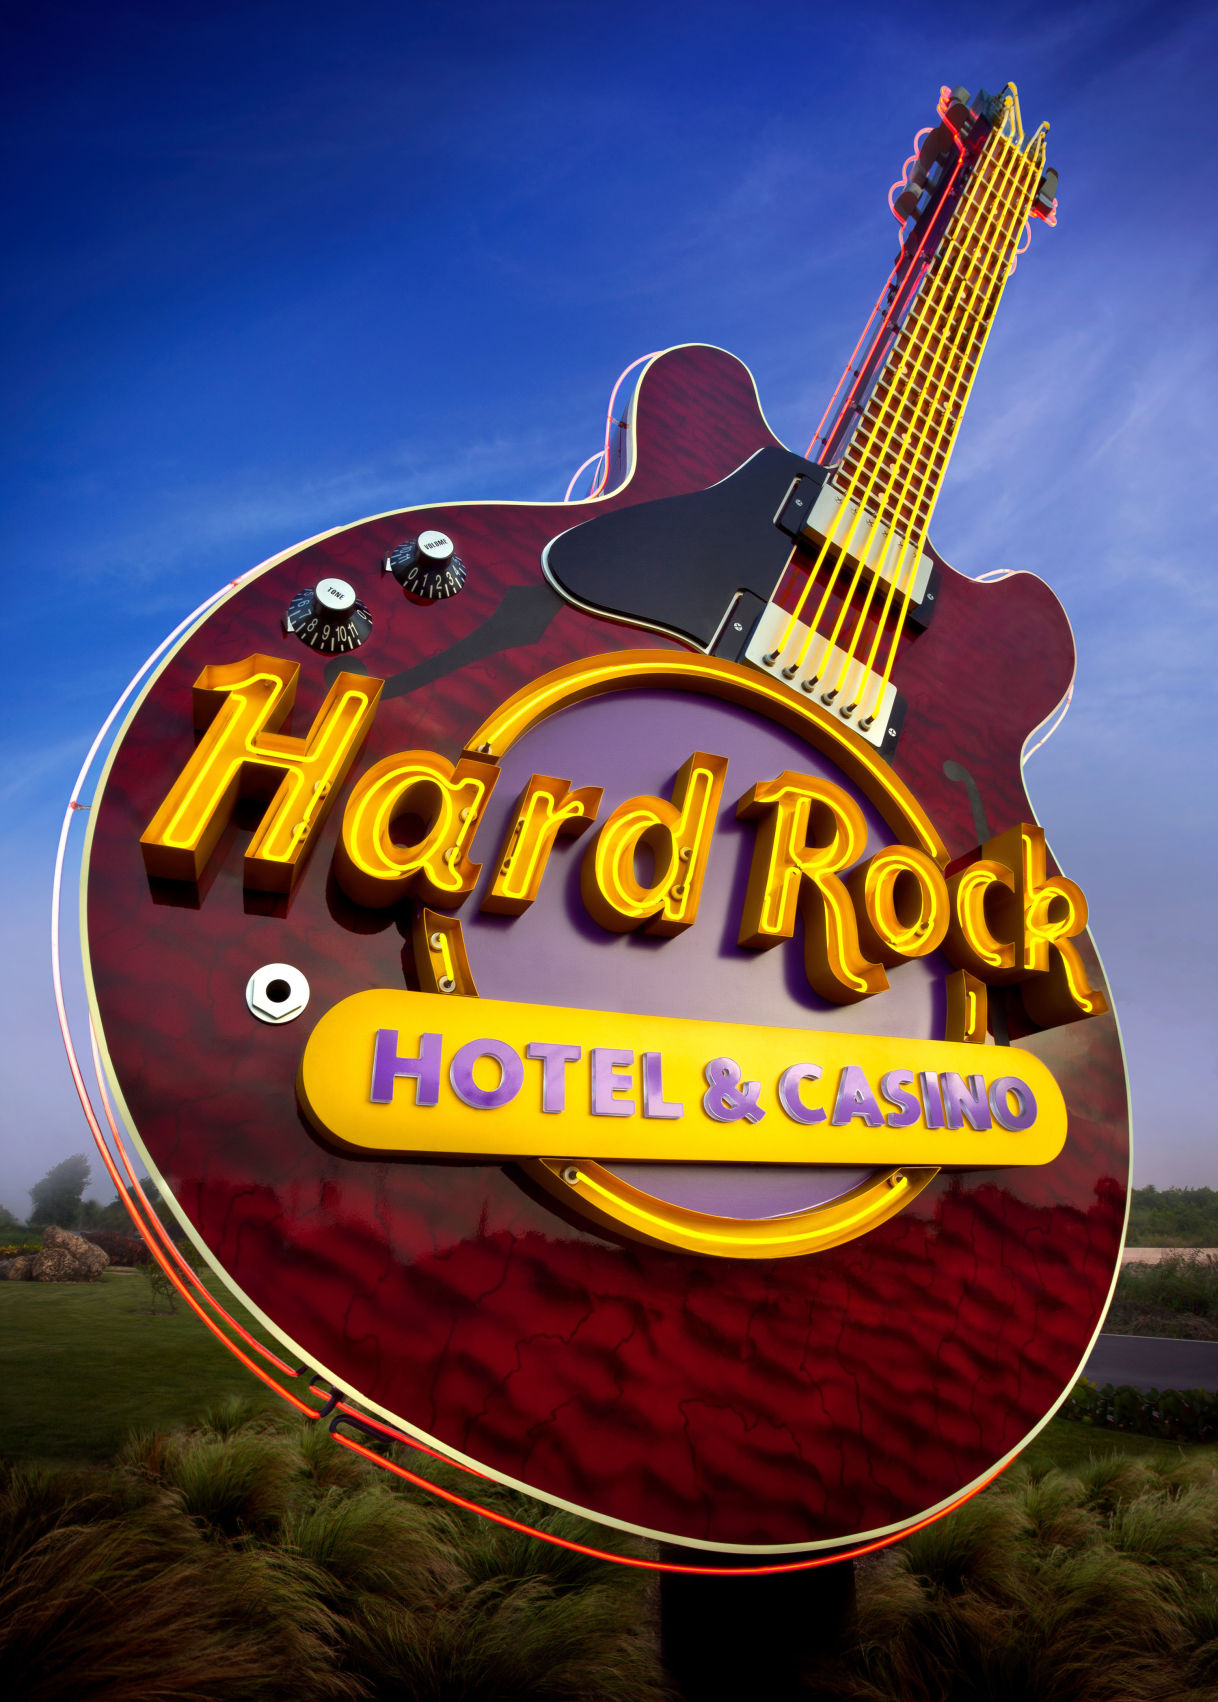 hard rock casino ottawa job fair